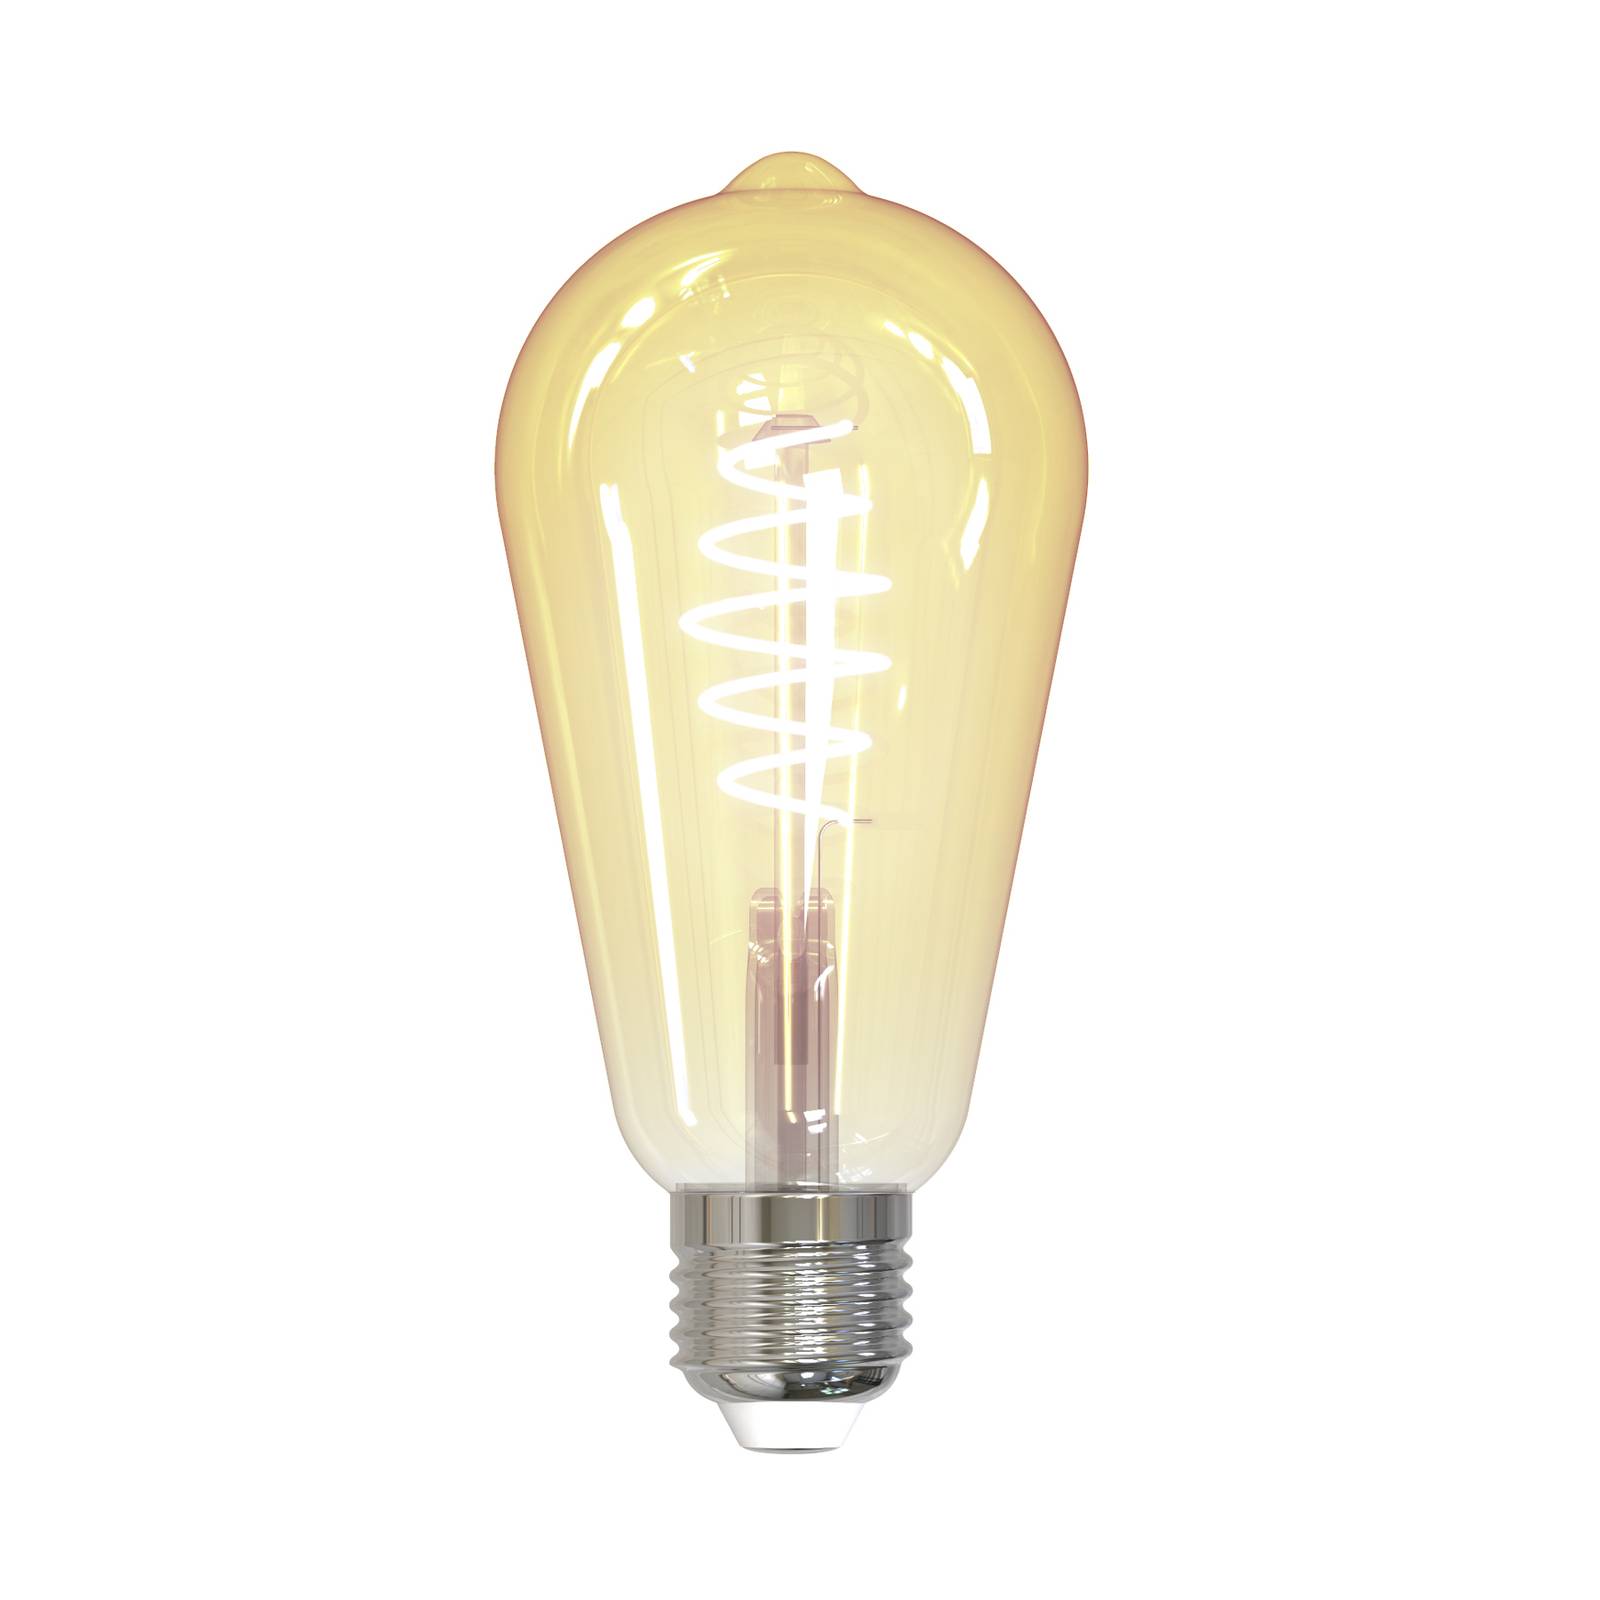 PRIOS Smart LED-Leuchtmittel E27 ST64 4,9W WLAN amber